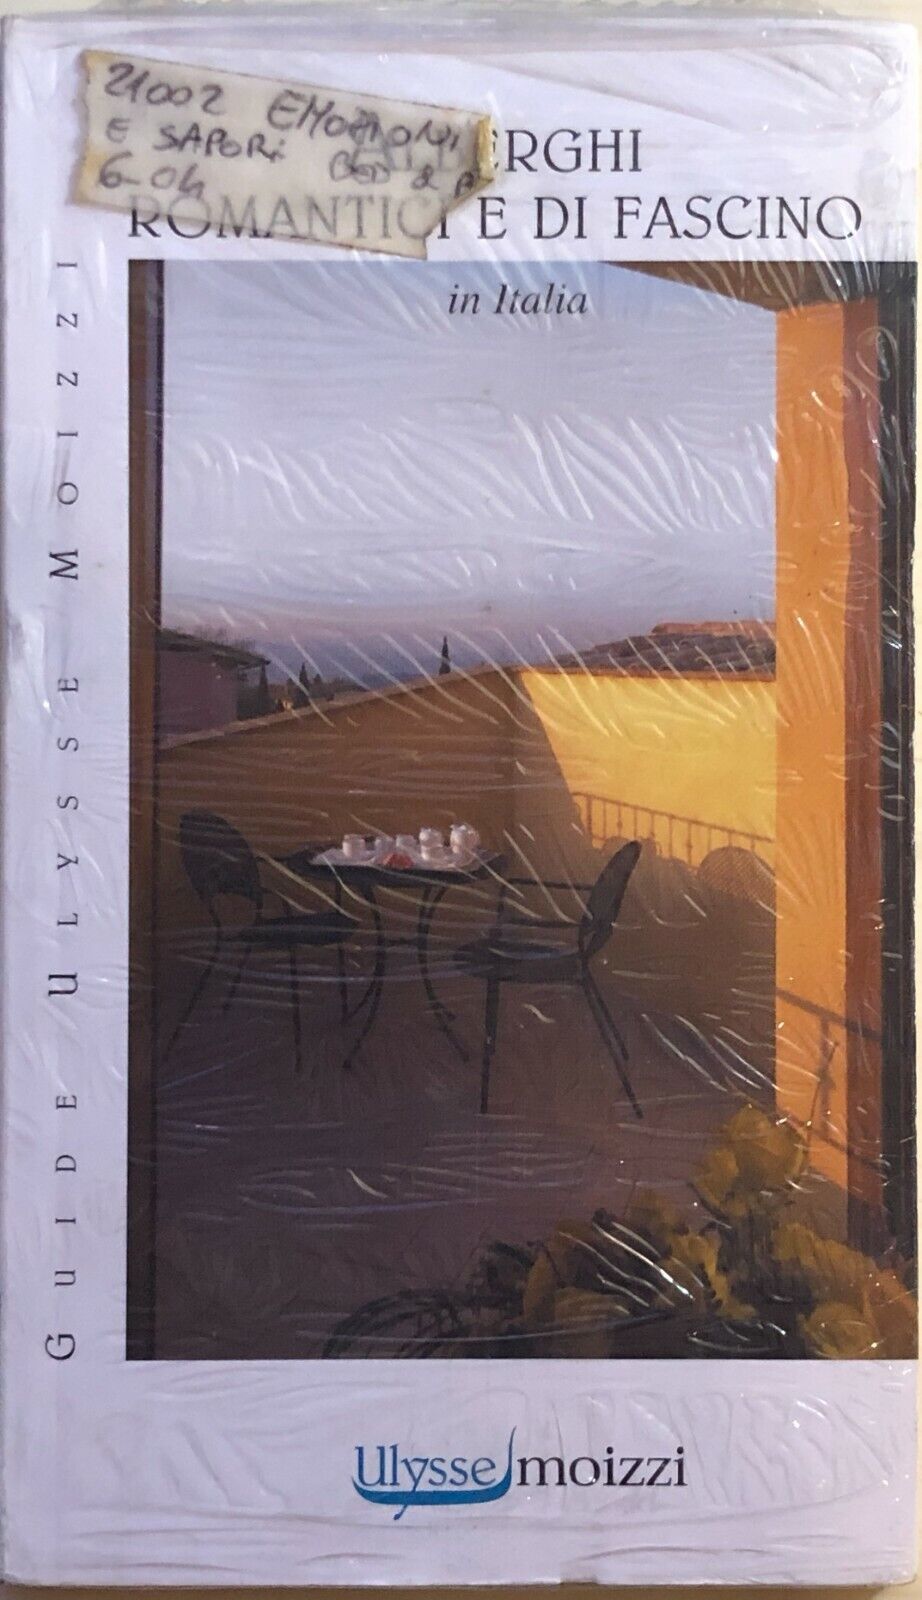 Alberghi romantici e di fascino in Italia di AA.VV., 2008, Ulysse Moizzi